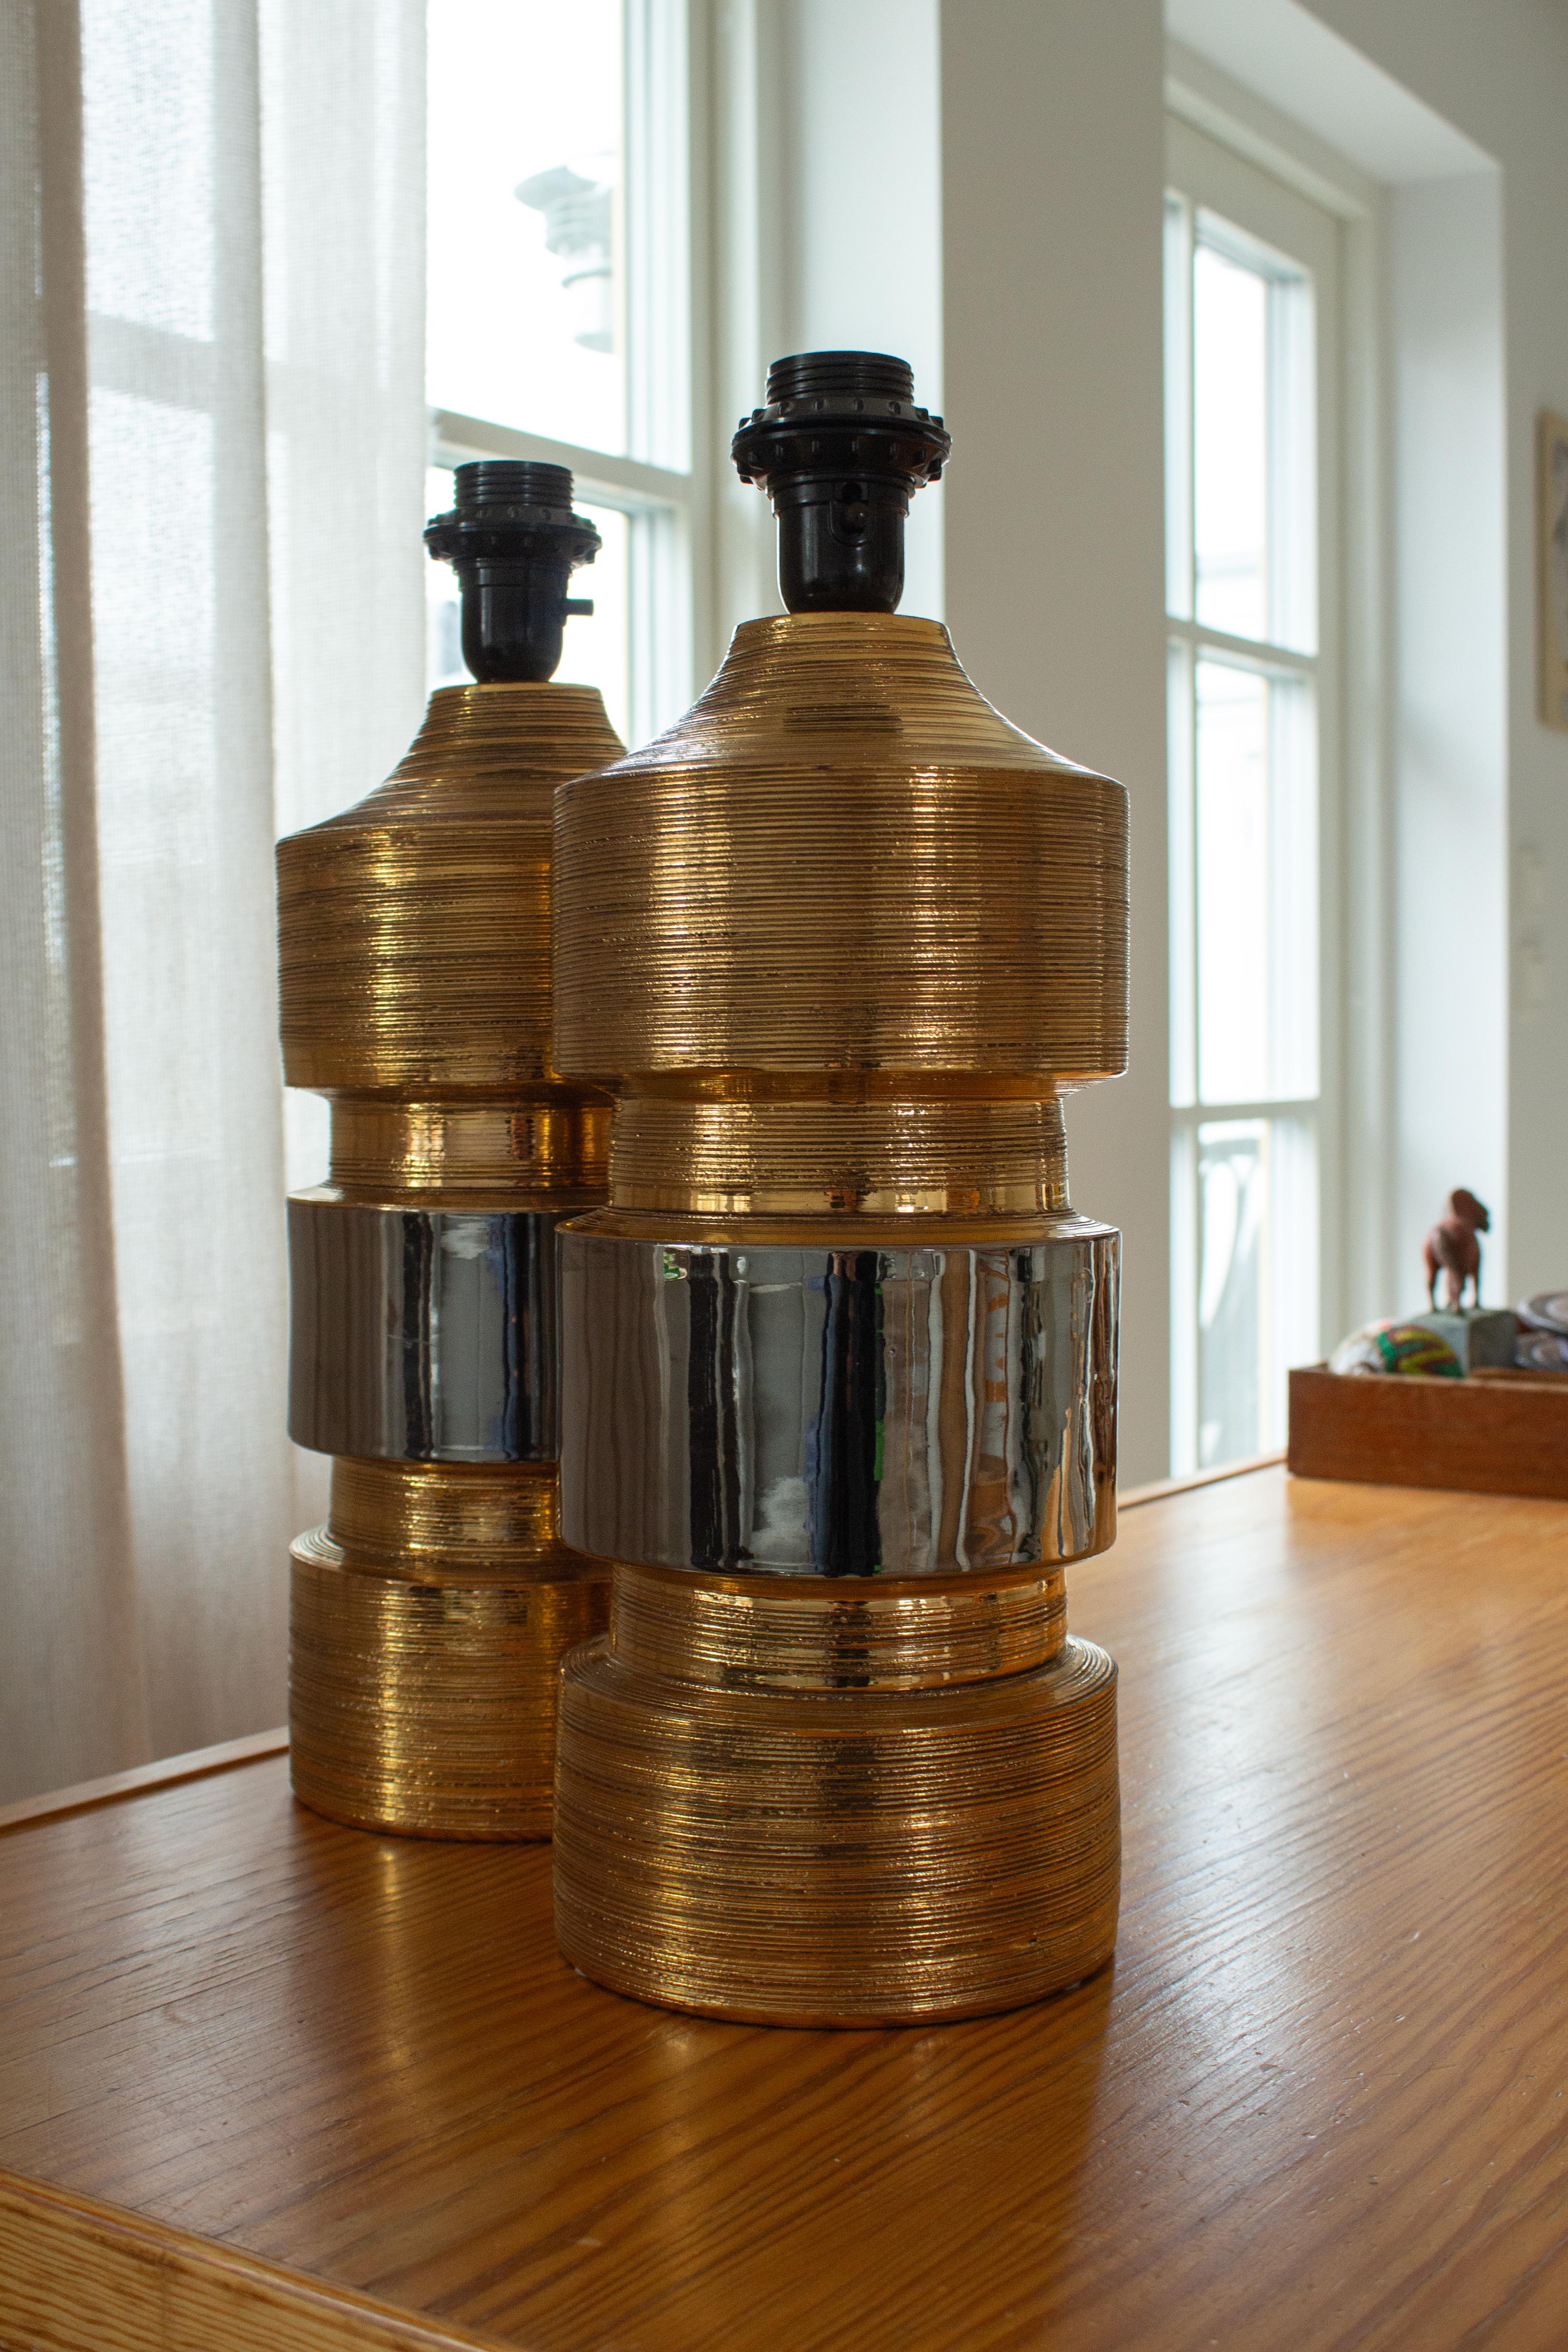 Fabuleuse paire de lampes de table en céramique de la famille de designers italiens Bitossi, conçues et fabriquées par Bergboms en Suède. Les lampes sont en excellent état. Les céramiques sont recouvertes d'une glaçure métallique dorée avec une